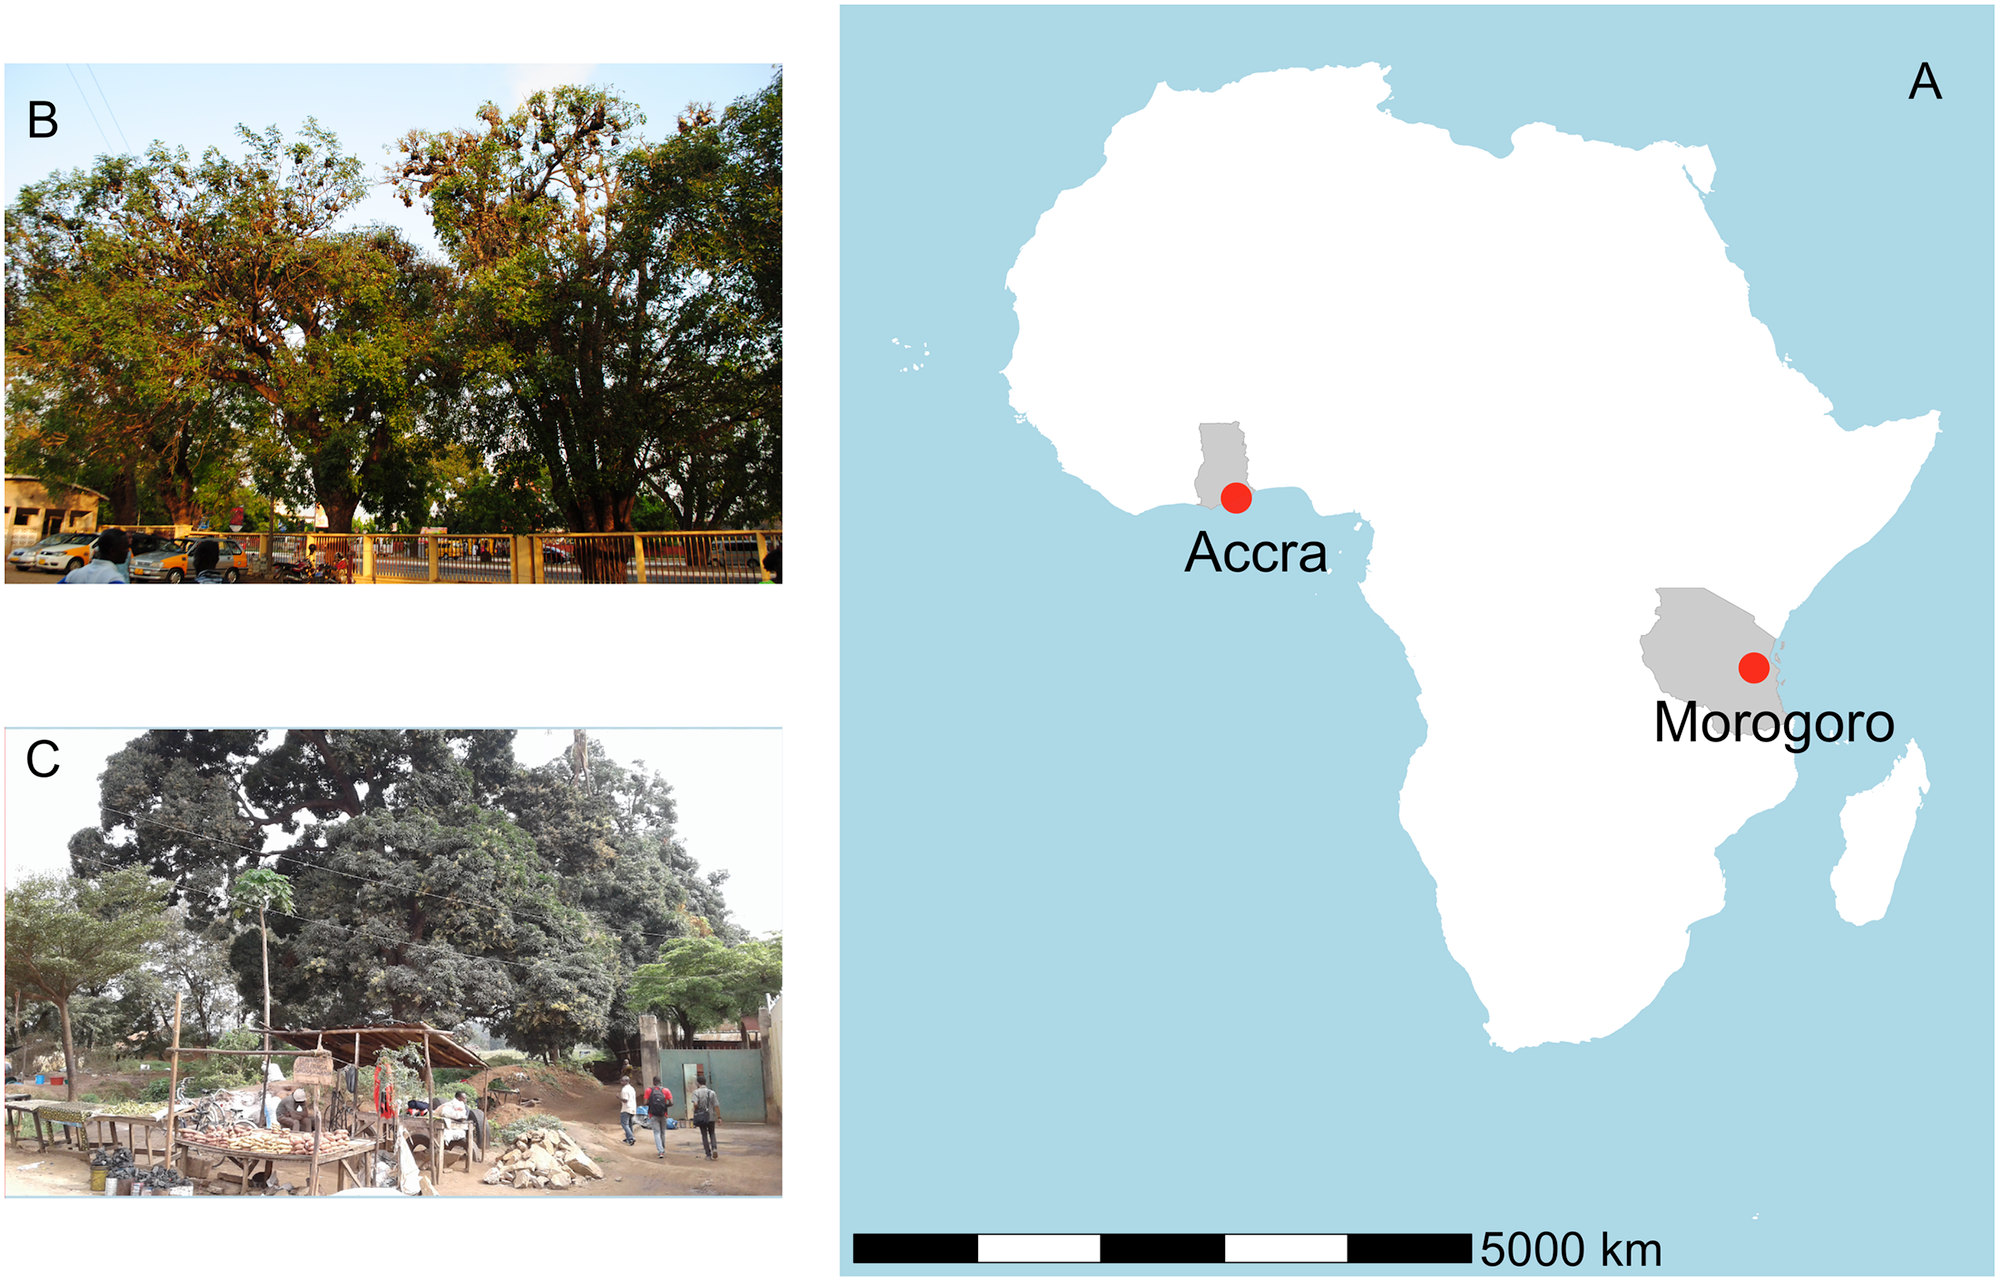 Le panneau A montre les emplacements des gîtes en Afrique.  Le panneau B montre certains des arbres occupés à l'hôpital militaire 37 à Accra, au Ghana et le panneau C montre des chauves-souris se perchant au marché de Kikundi à Morogoro, en Tanzanie.